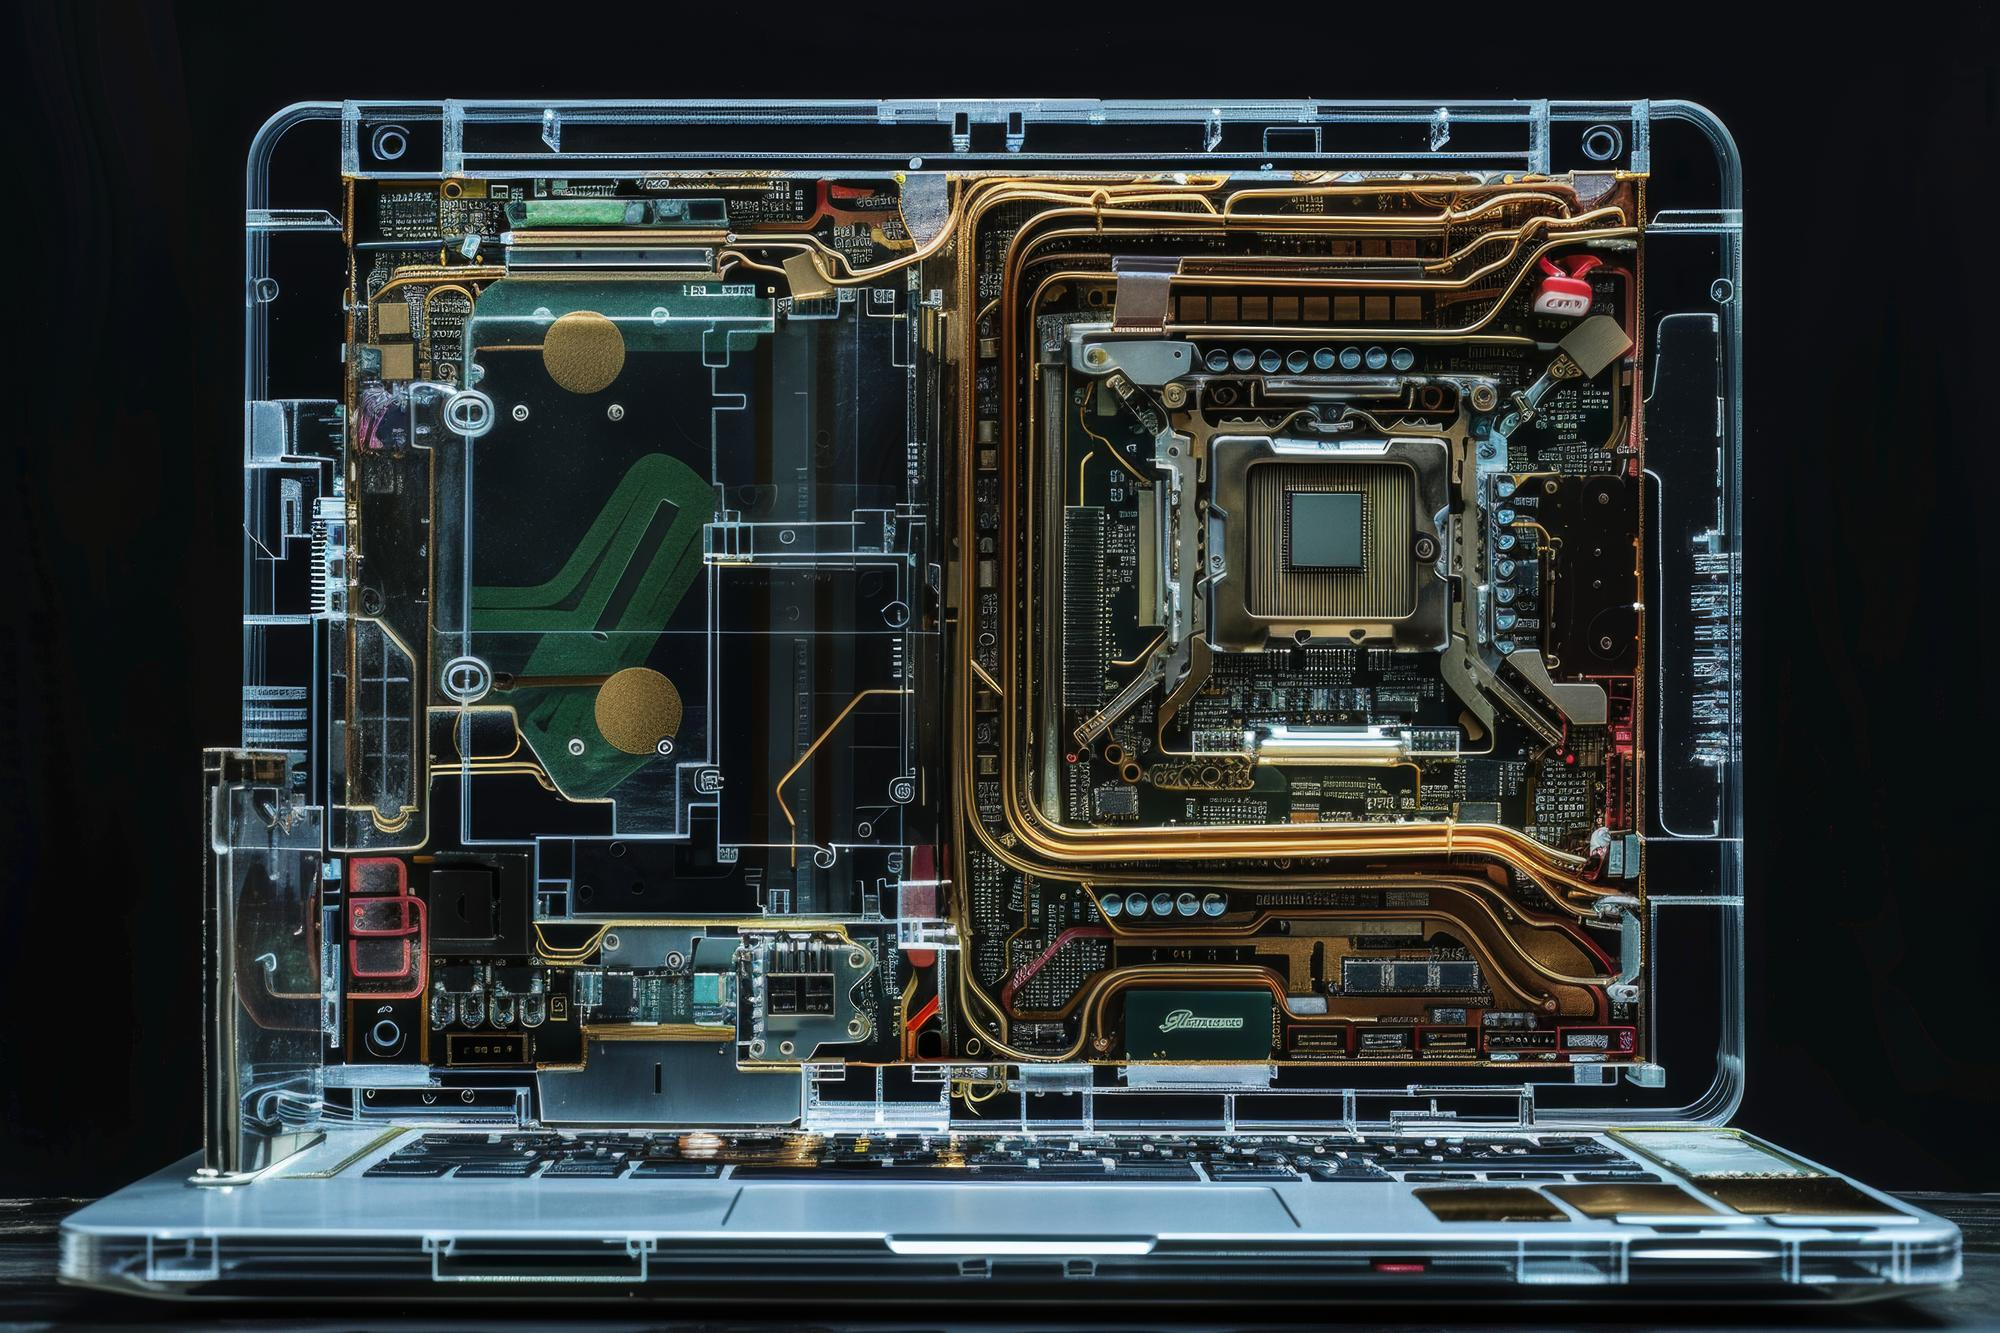 Depiction of motherboard inside laptop